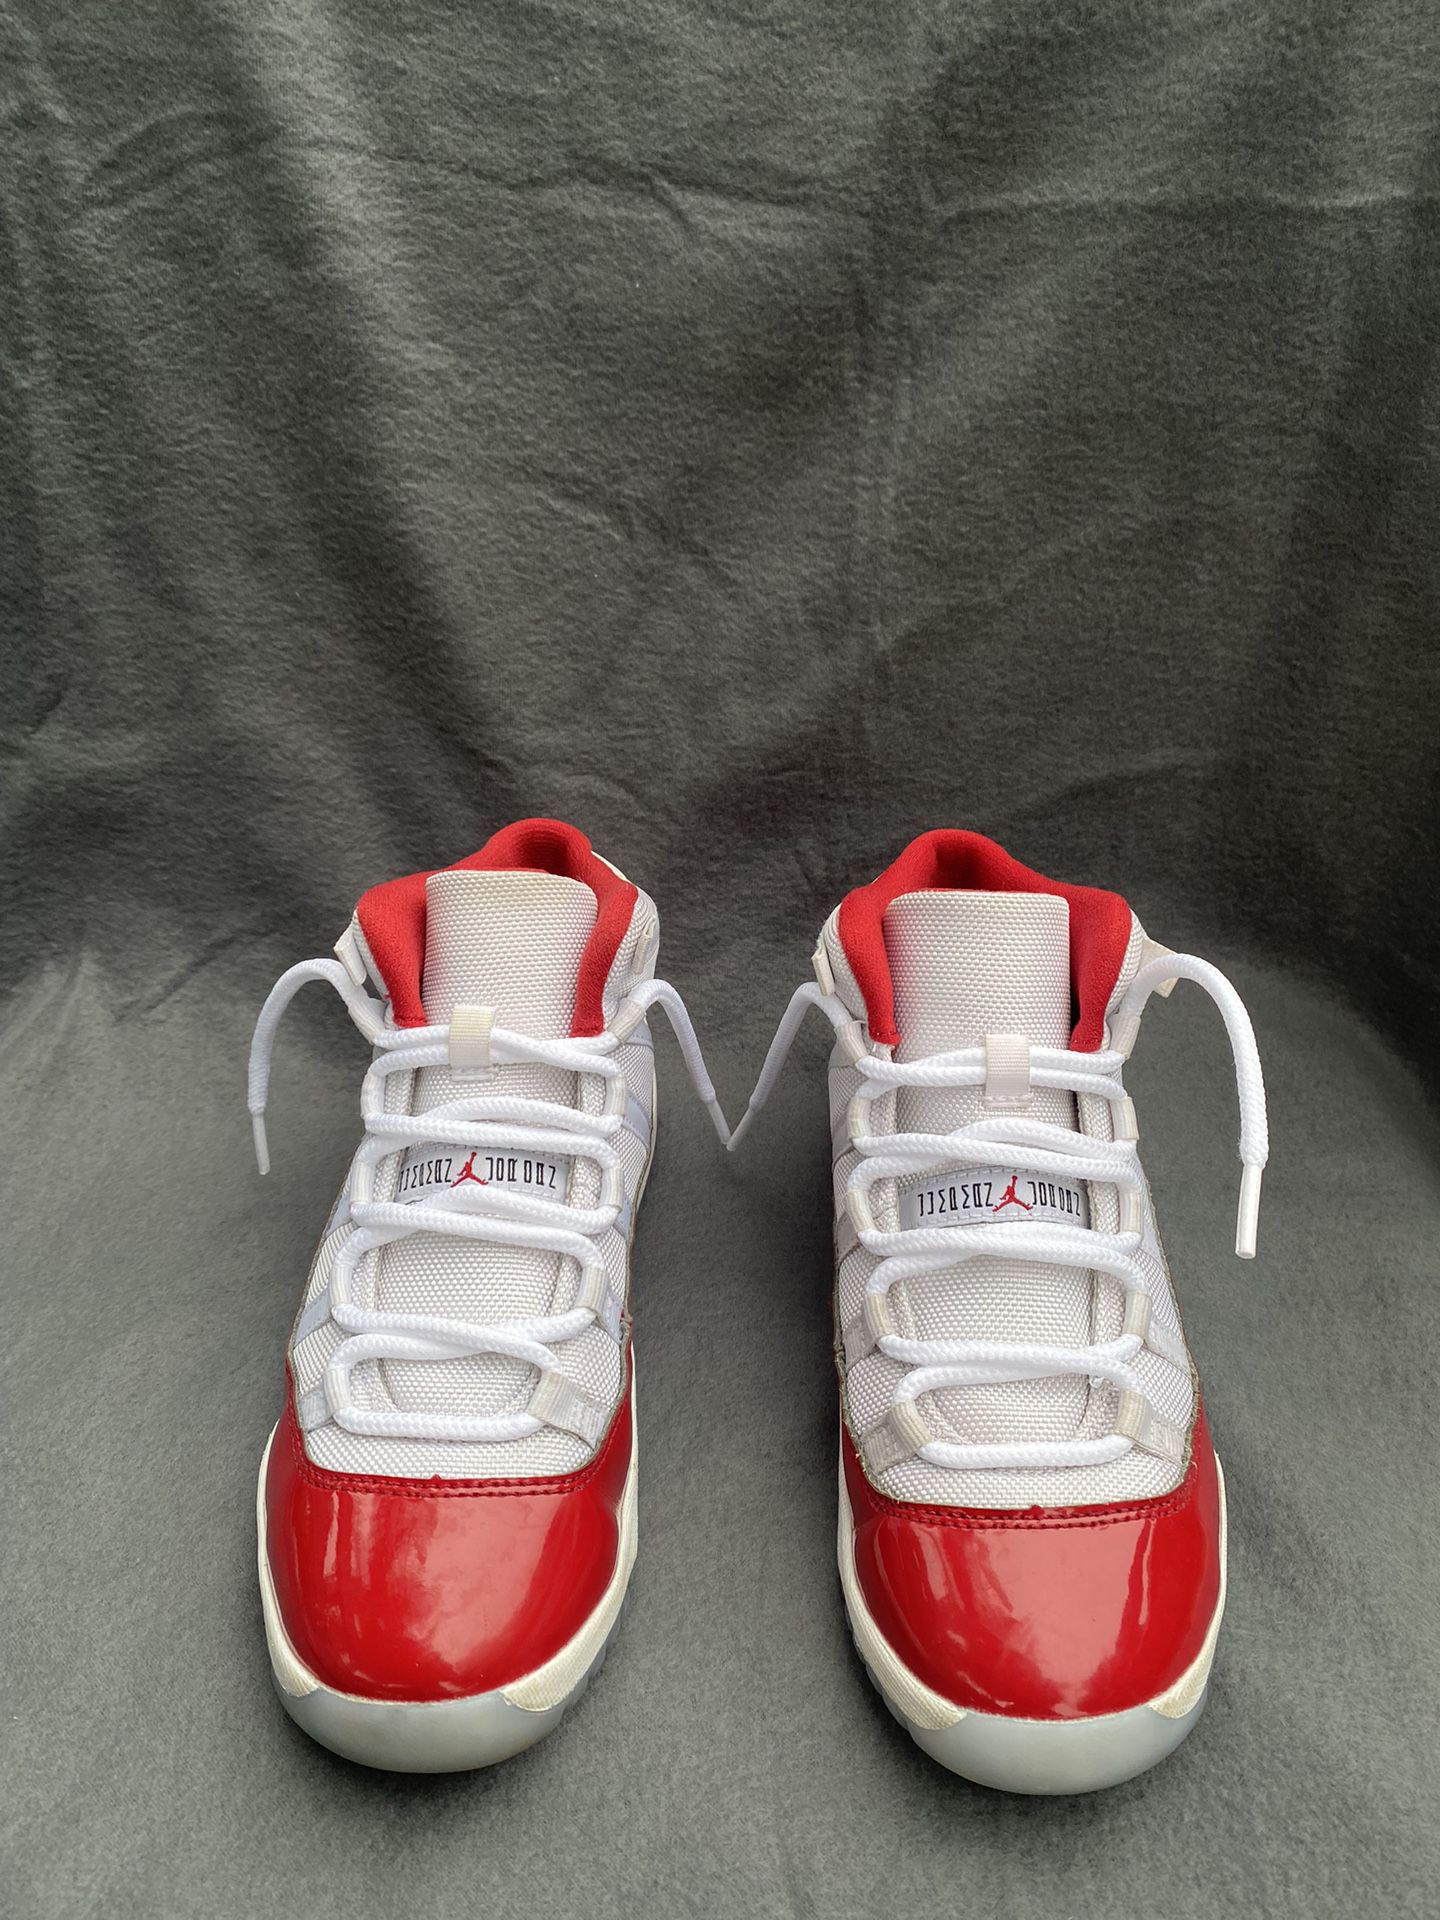 Kid’s Jordan 11 Shoes 